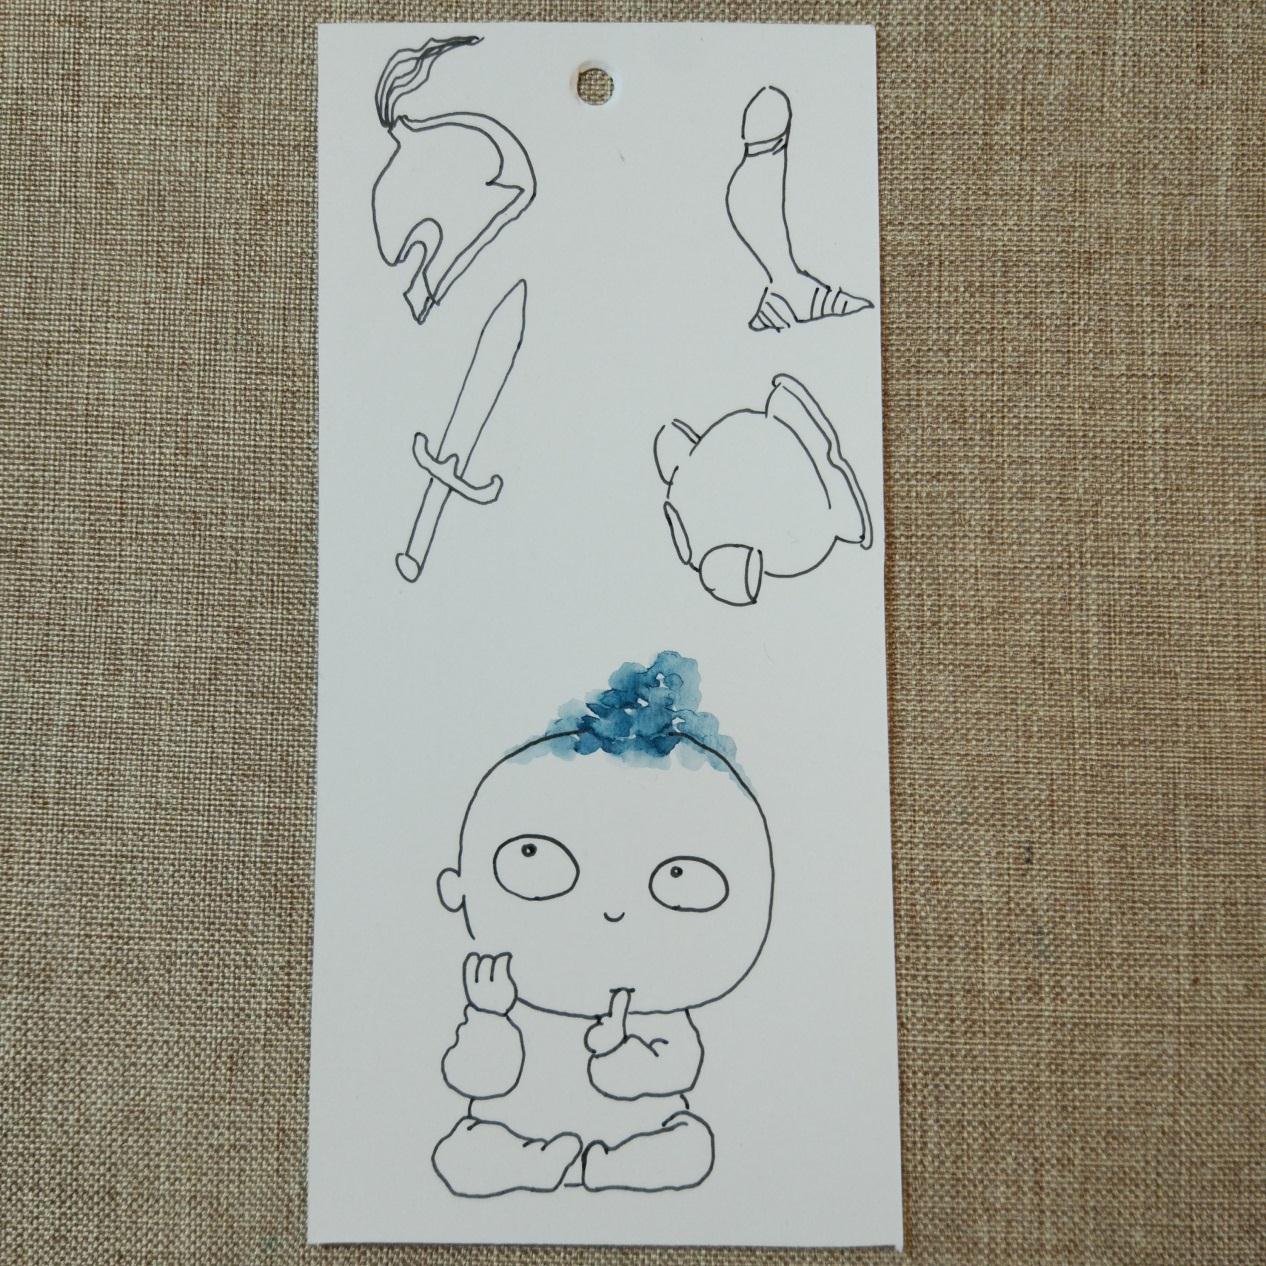 可爱的小孩子水彩画手绘书签-朱德庸漫画系列